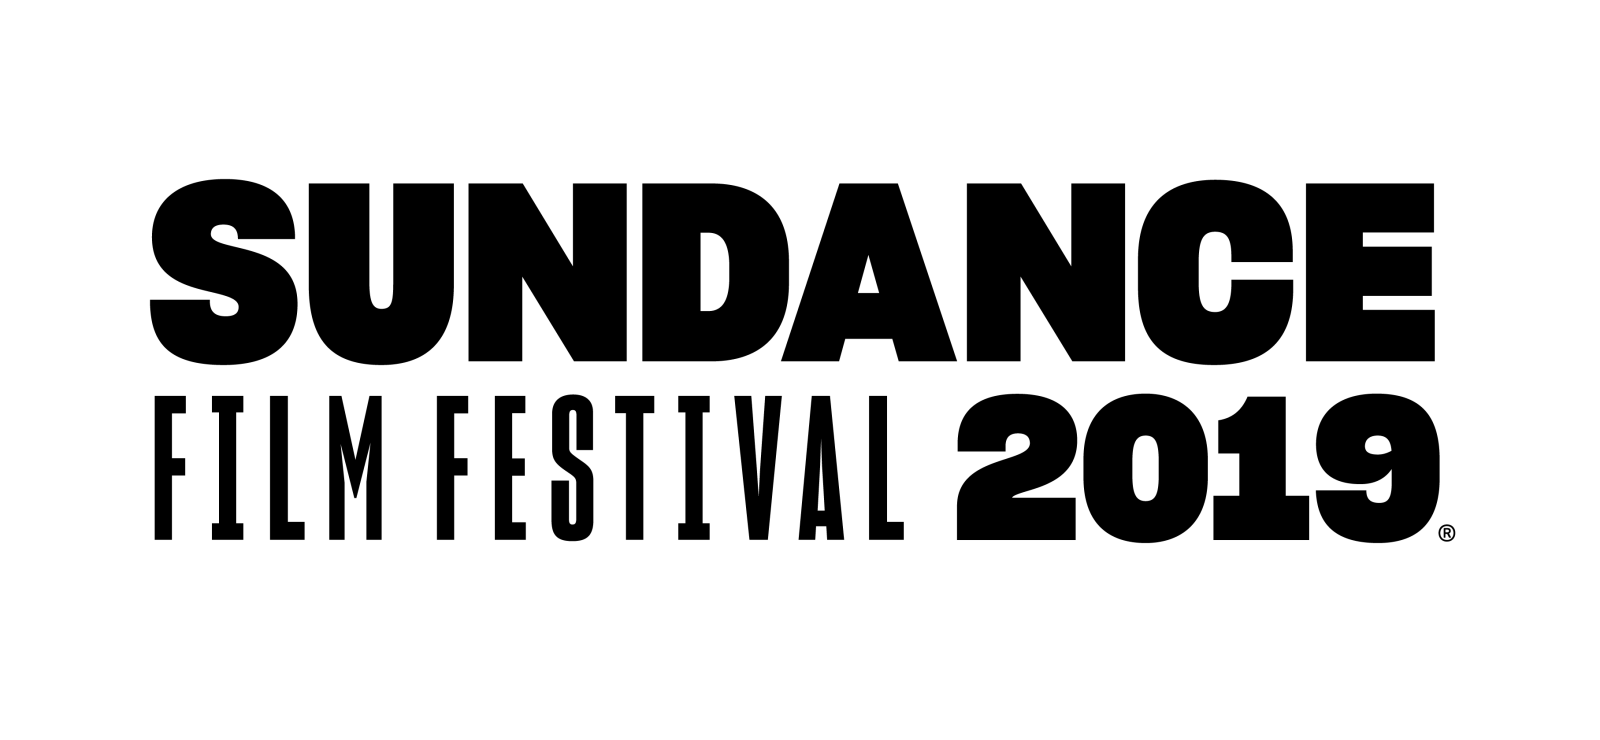 Sundance Film Festival wallpaper